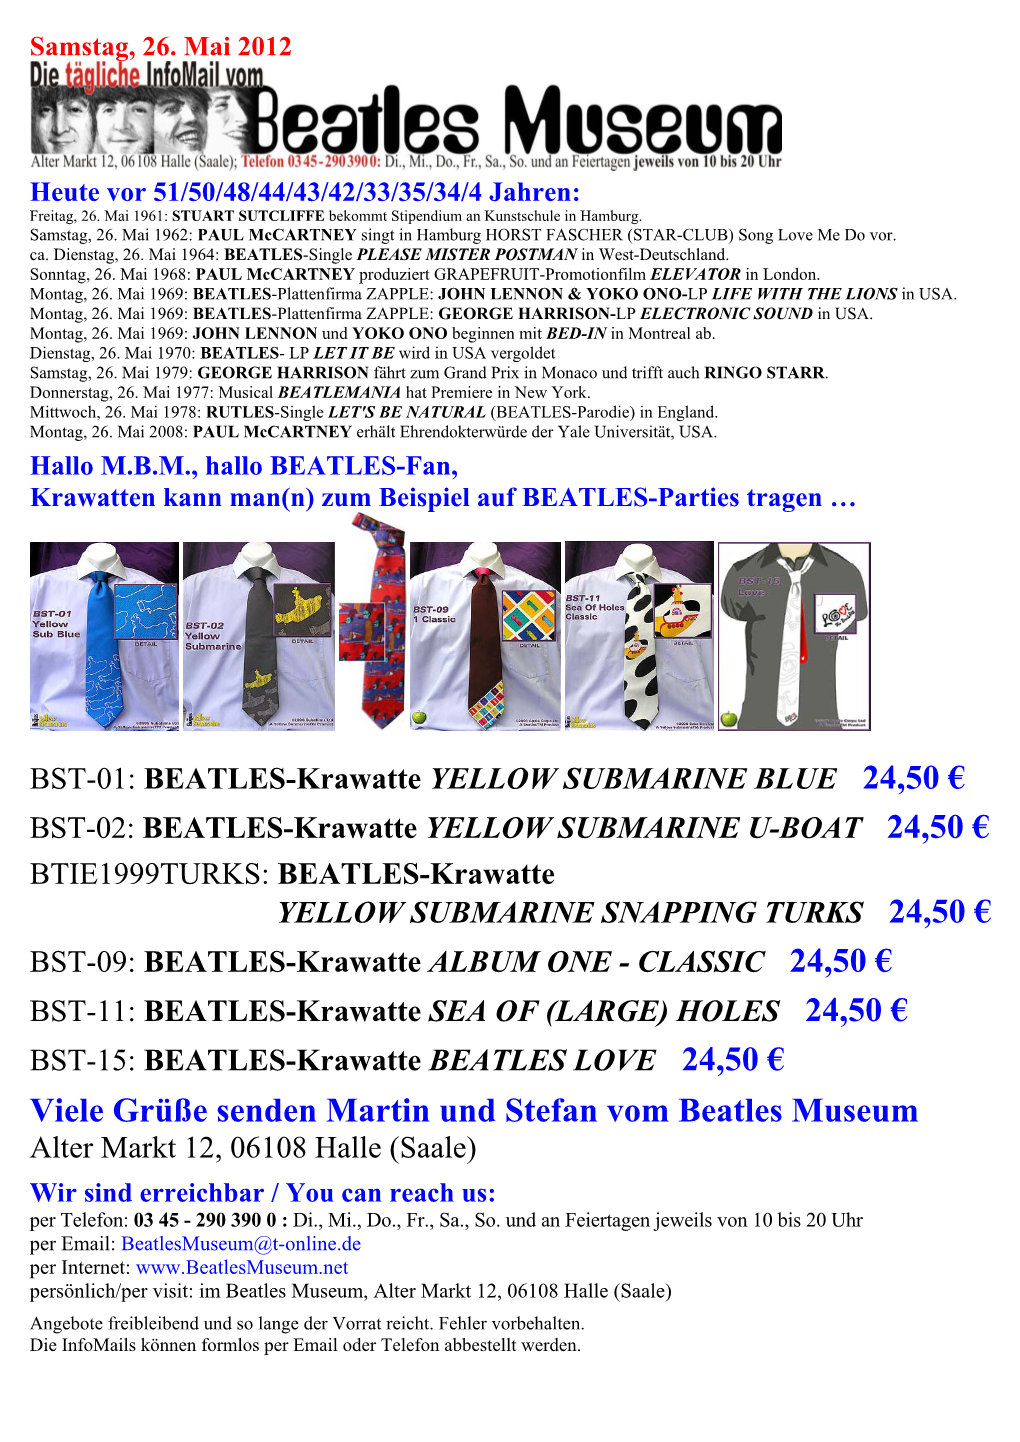 Viele Grüße Senden Martin Und Stefan Vom Beatles Museum Alter Markt 12, 06108 Halle (Saale)